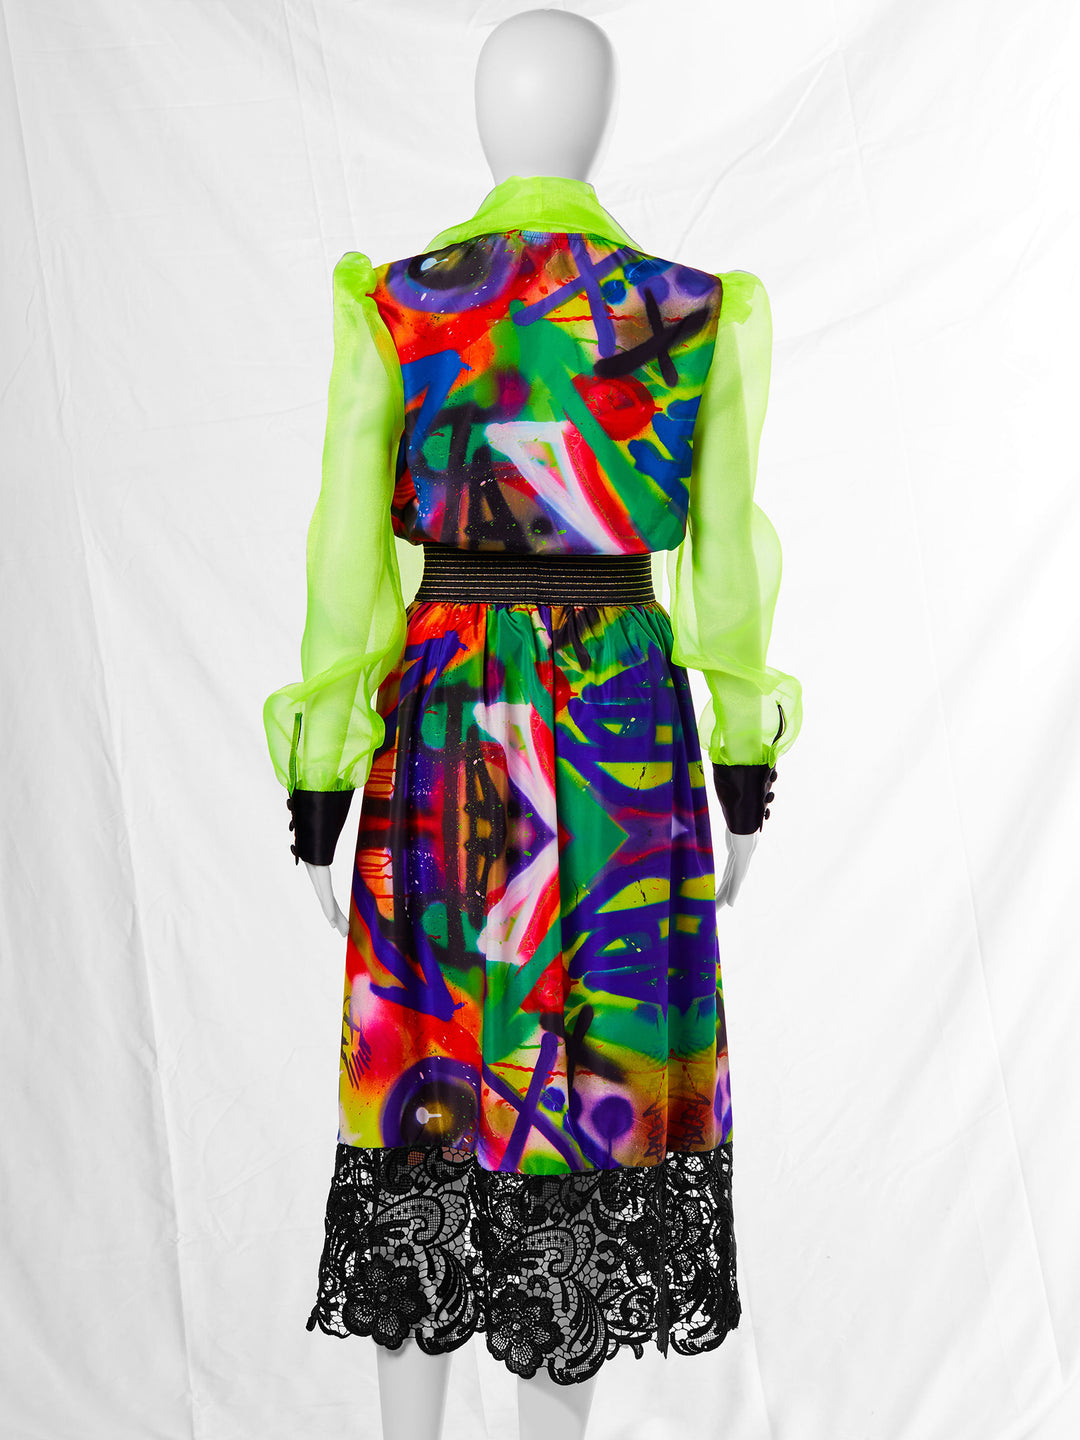 Lace Trim Midi Skirt in Graffiti Print (50% OFF)